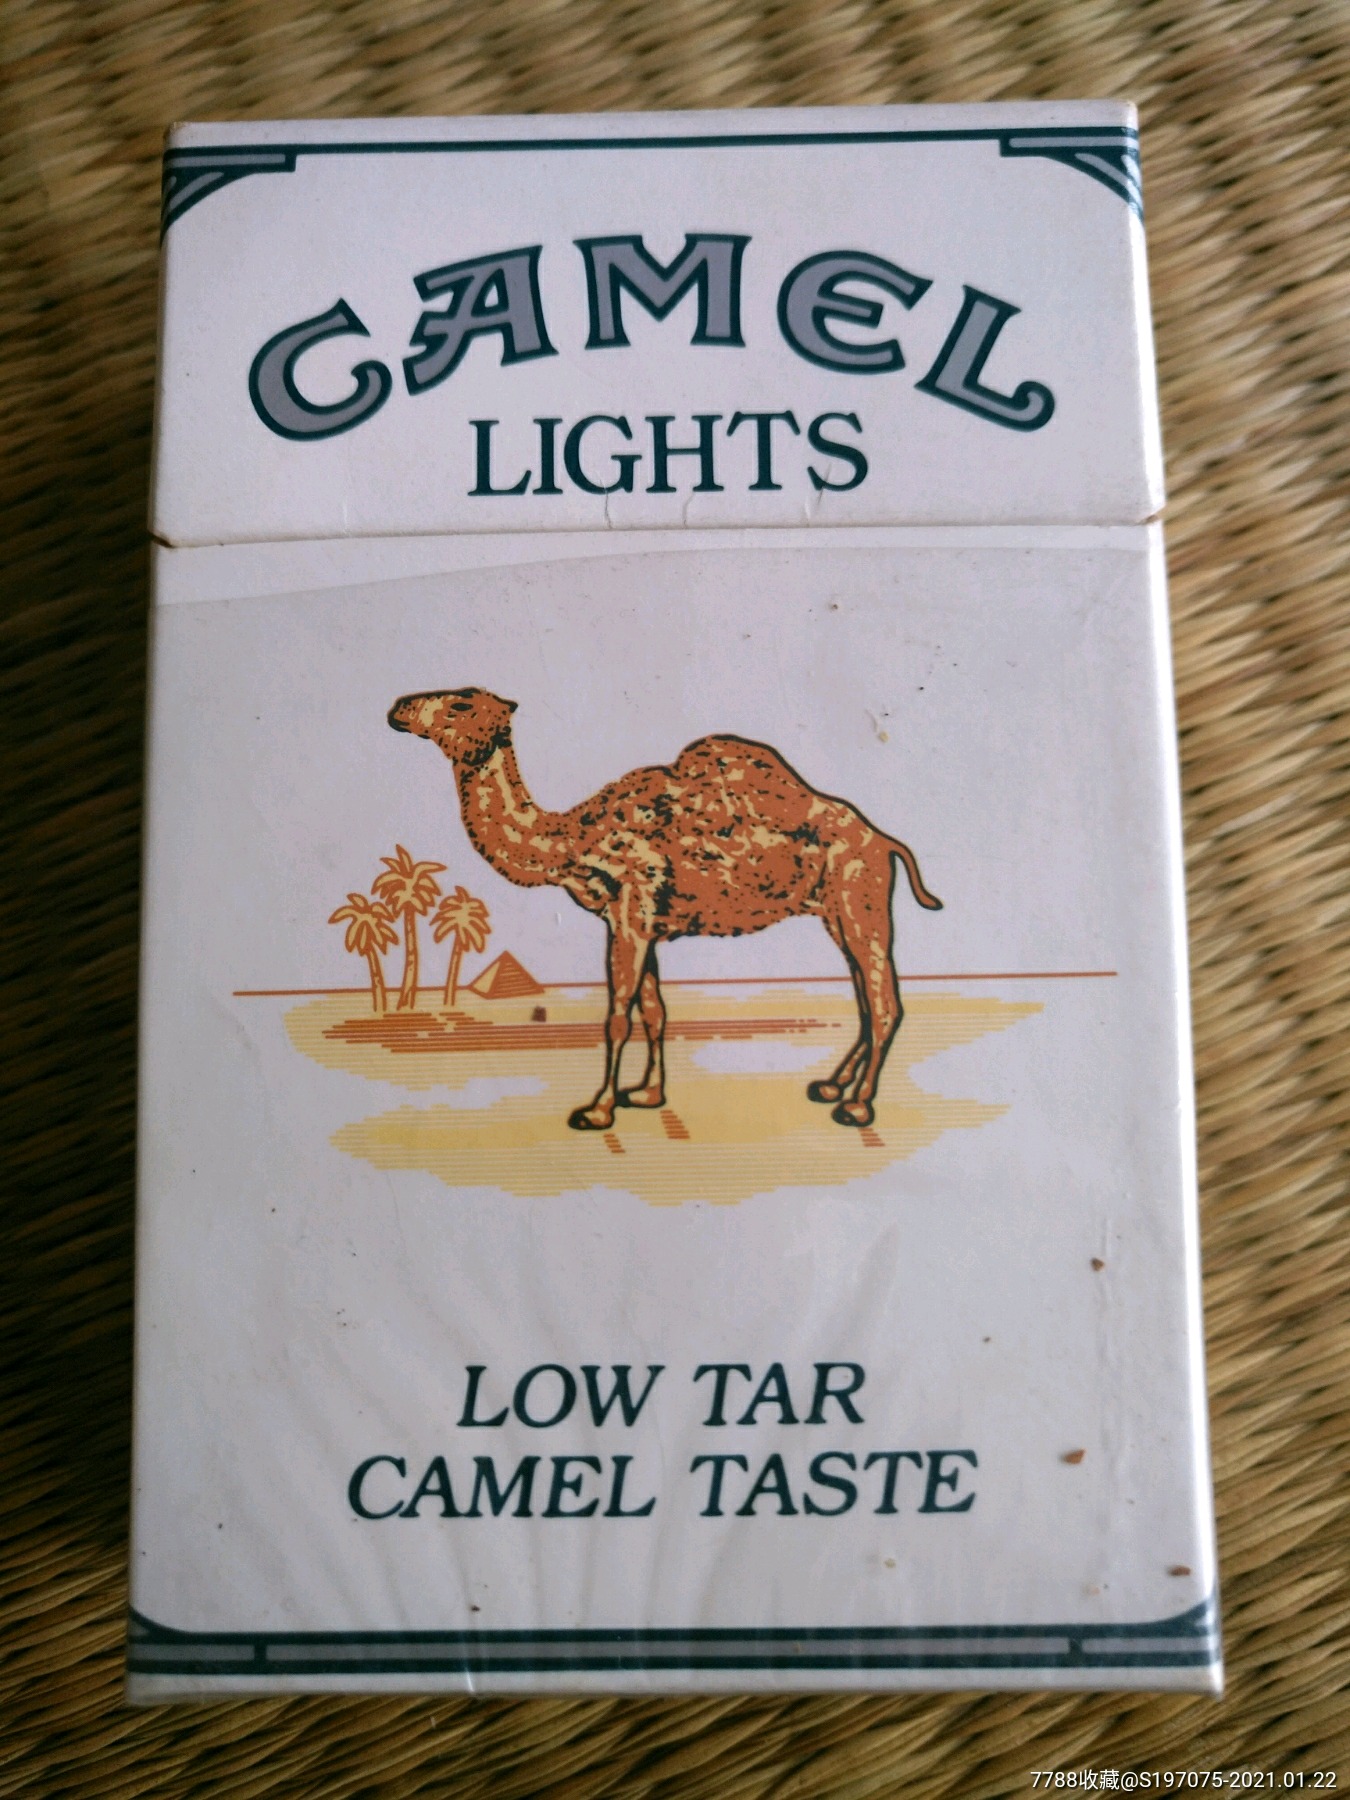 日本骆驼香烟价格表图图片